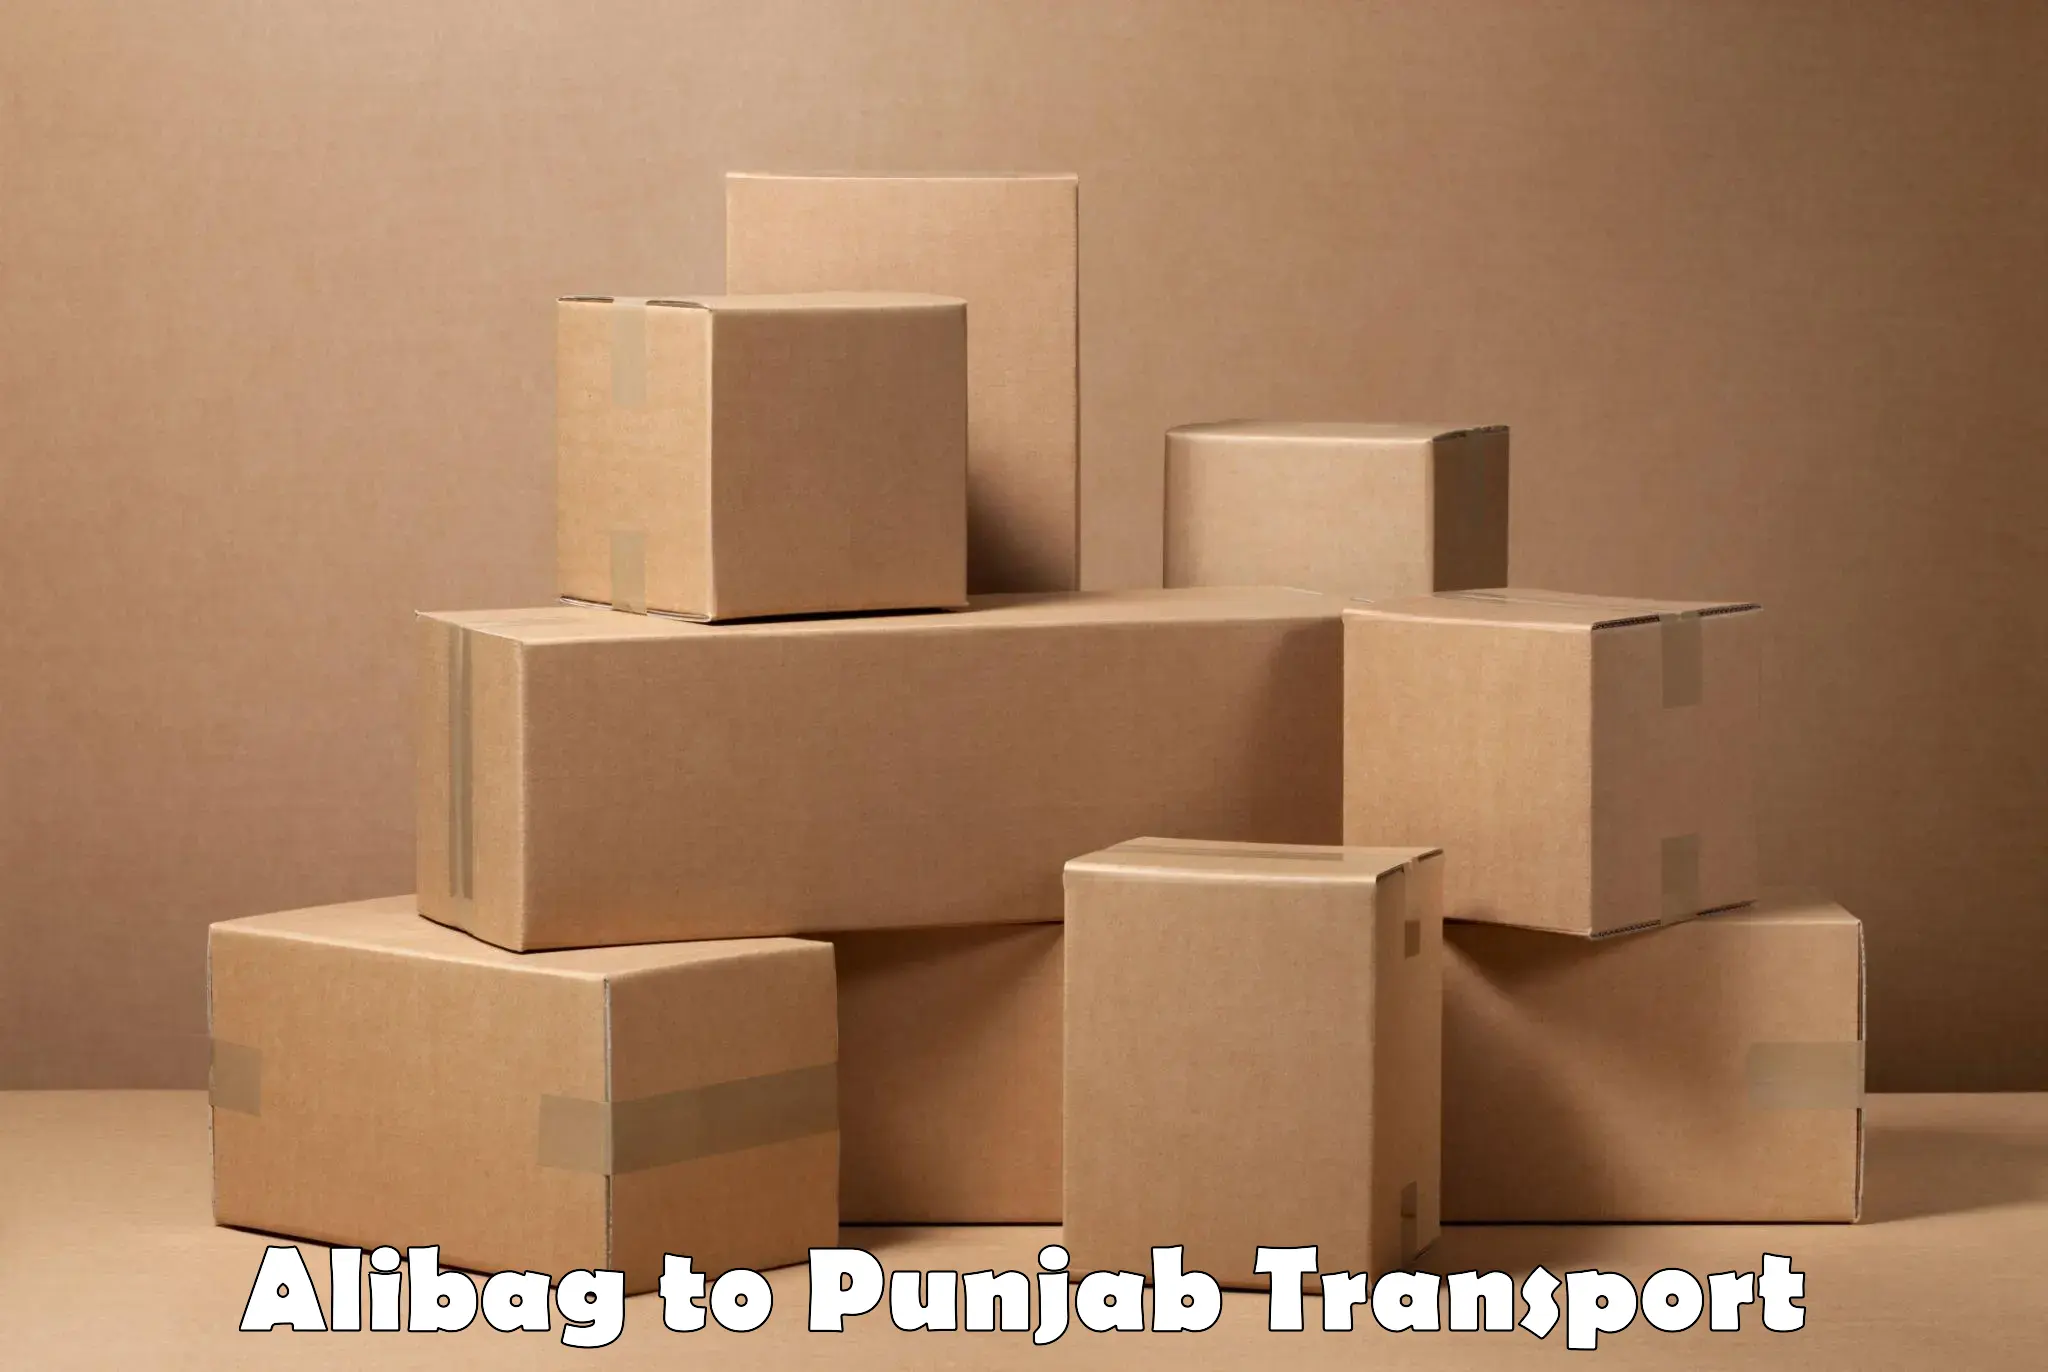 Online transport service Alibag to Dinanagar